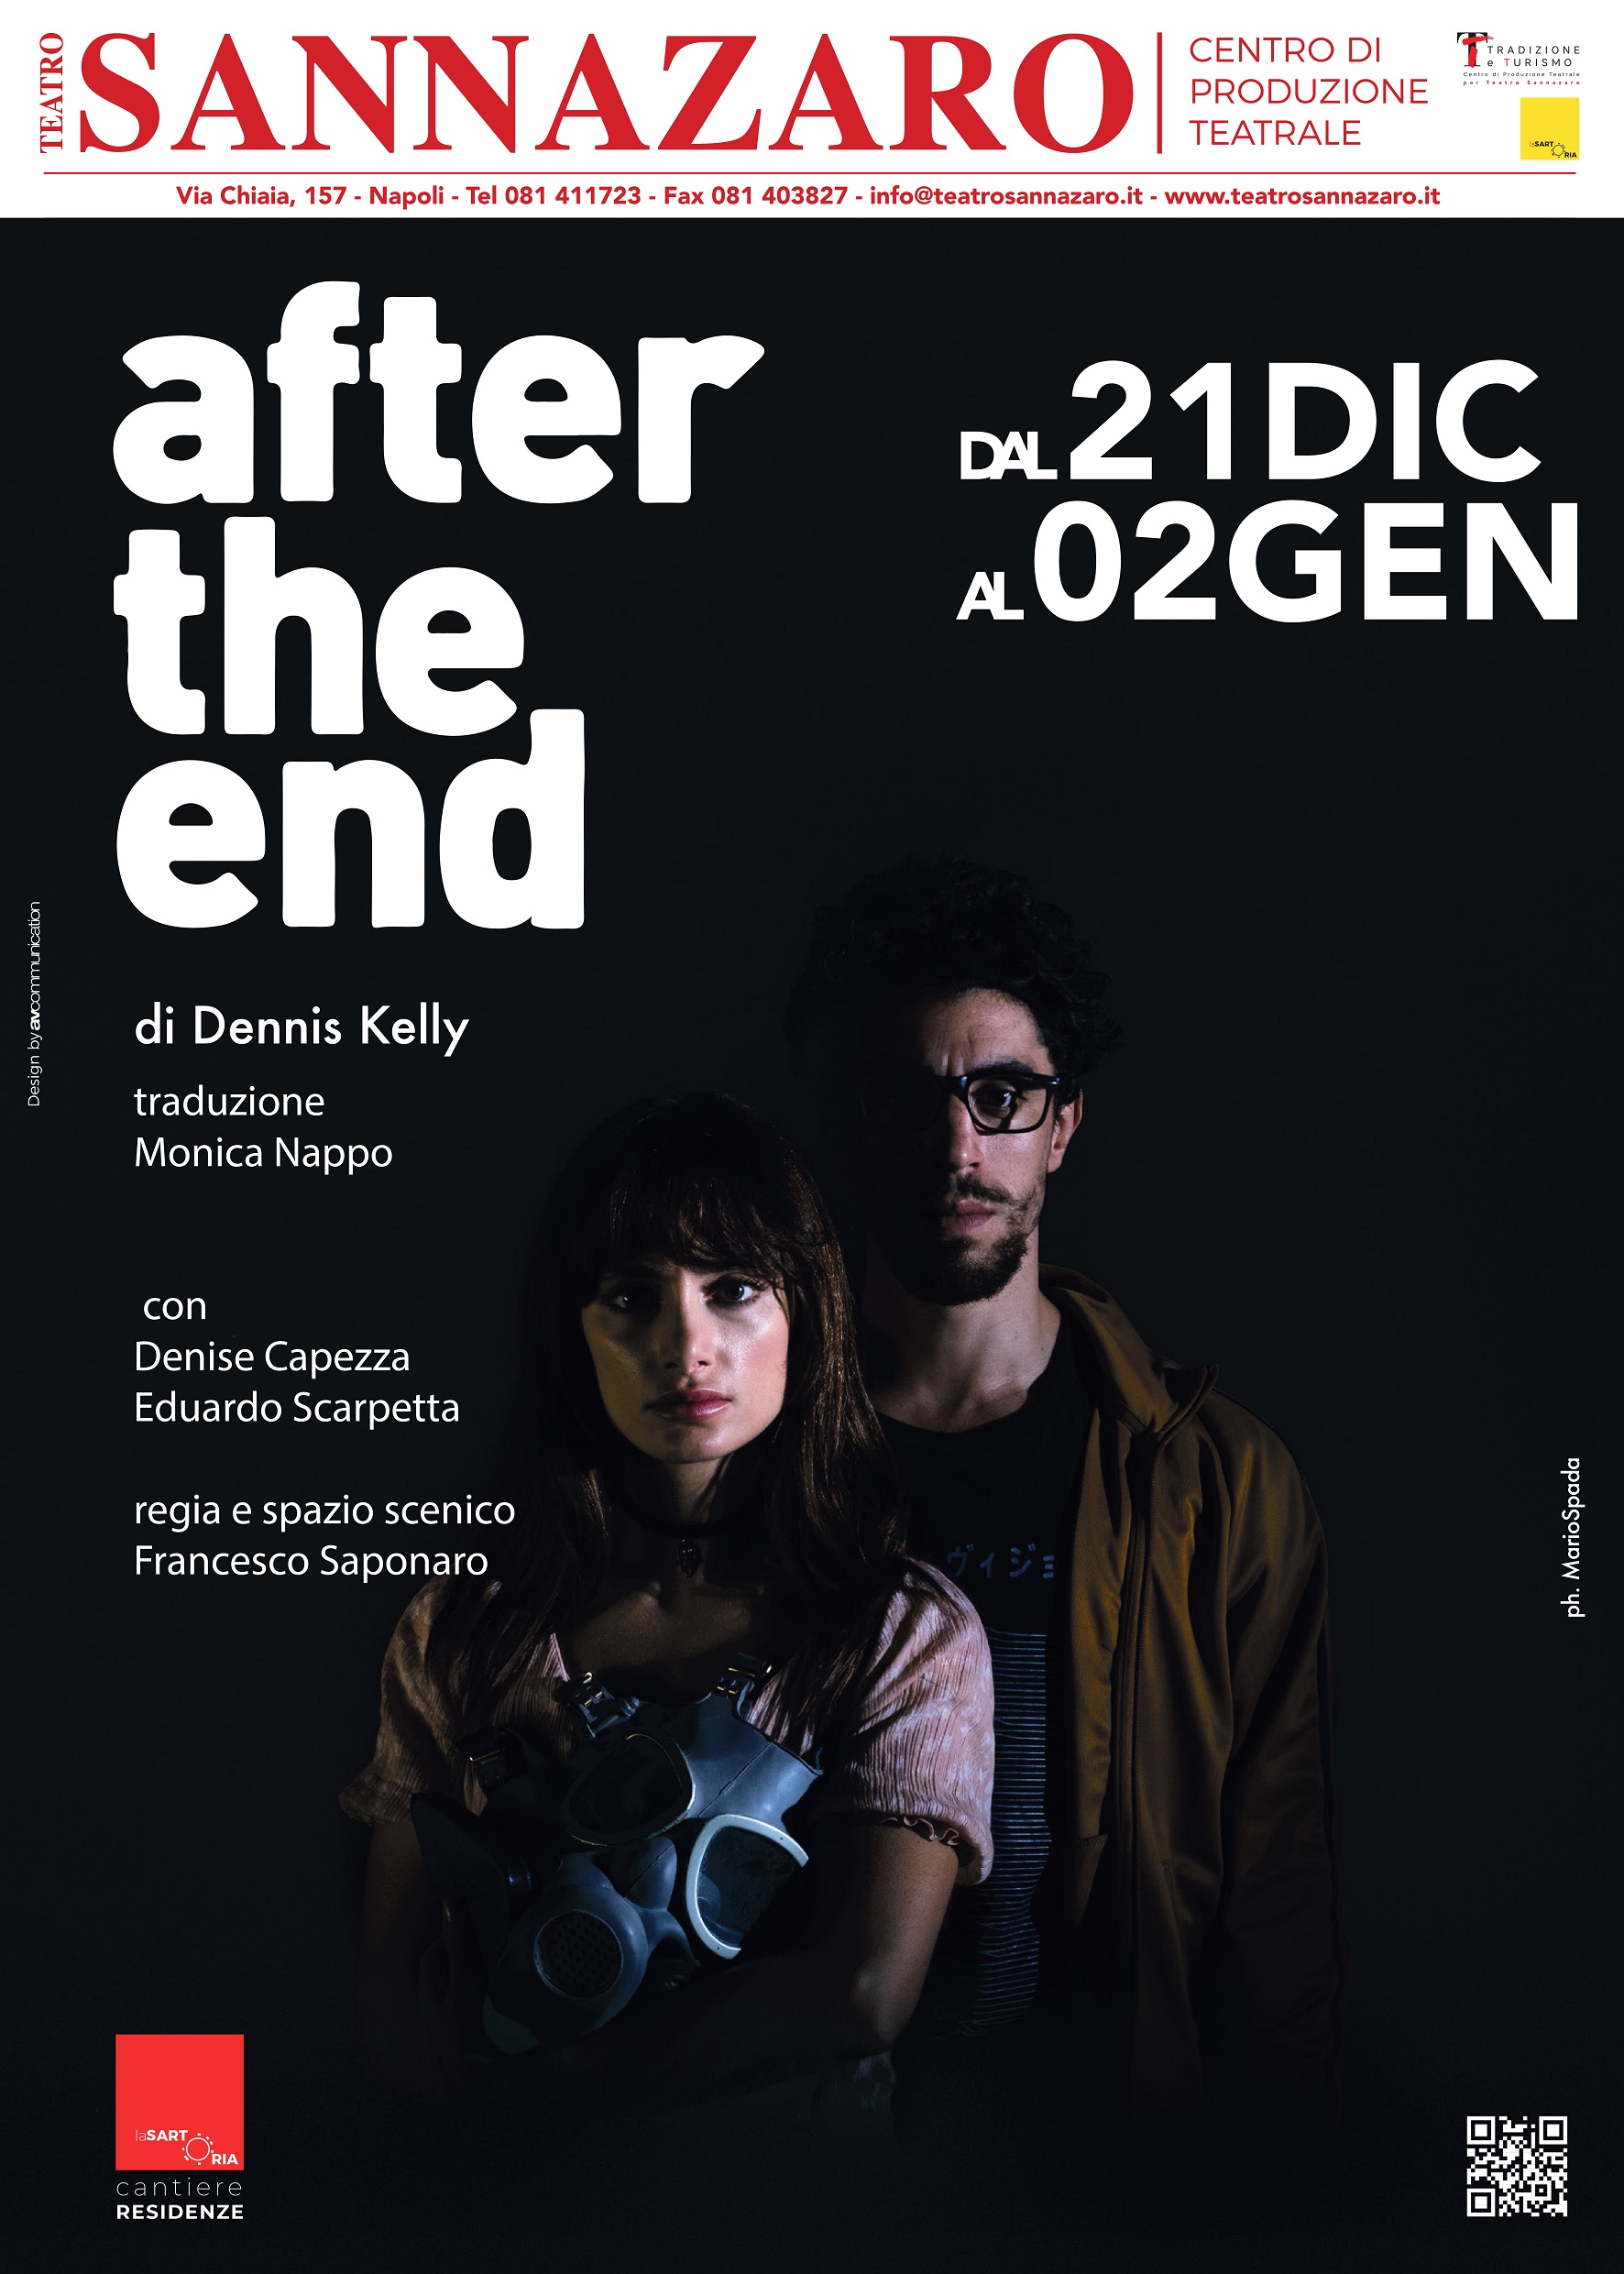 After The End di Dennis Kelly Con Denise Capezza e Eduardo Scarpetta Regia di Francesco Saponaro Teatro Sannazaro di Napoli